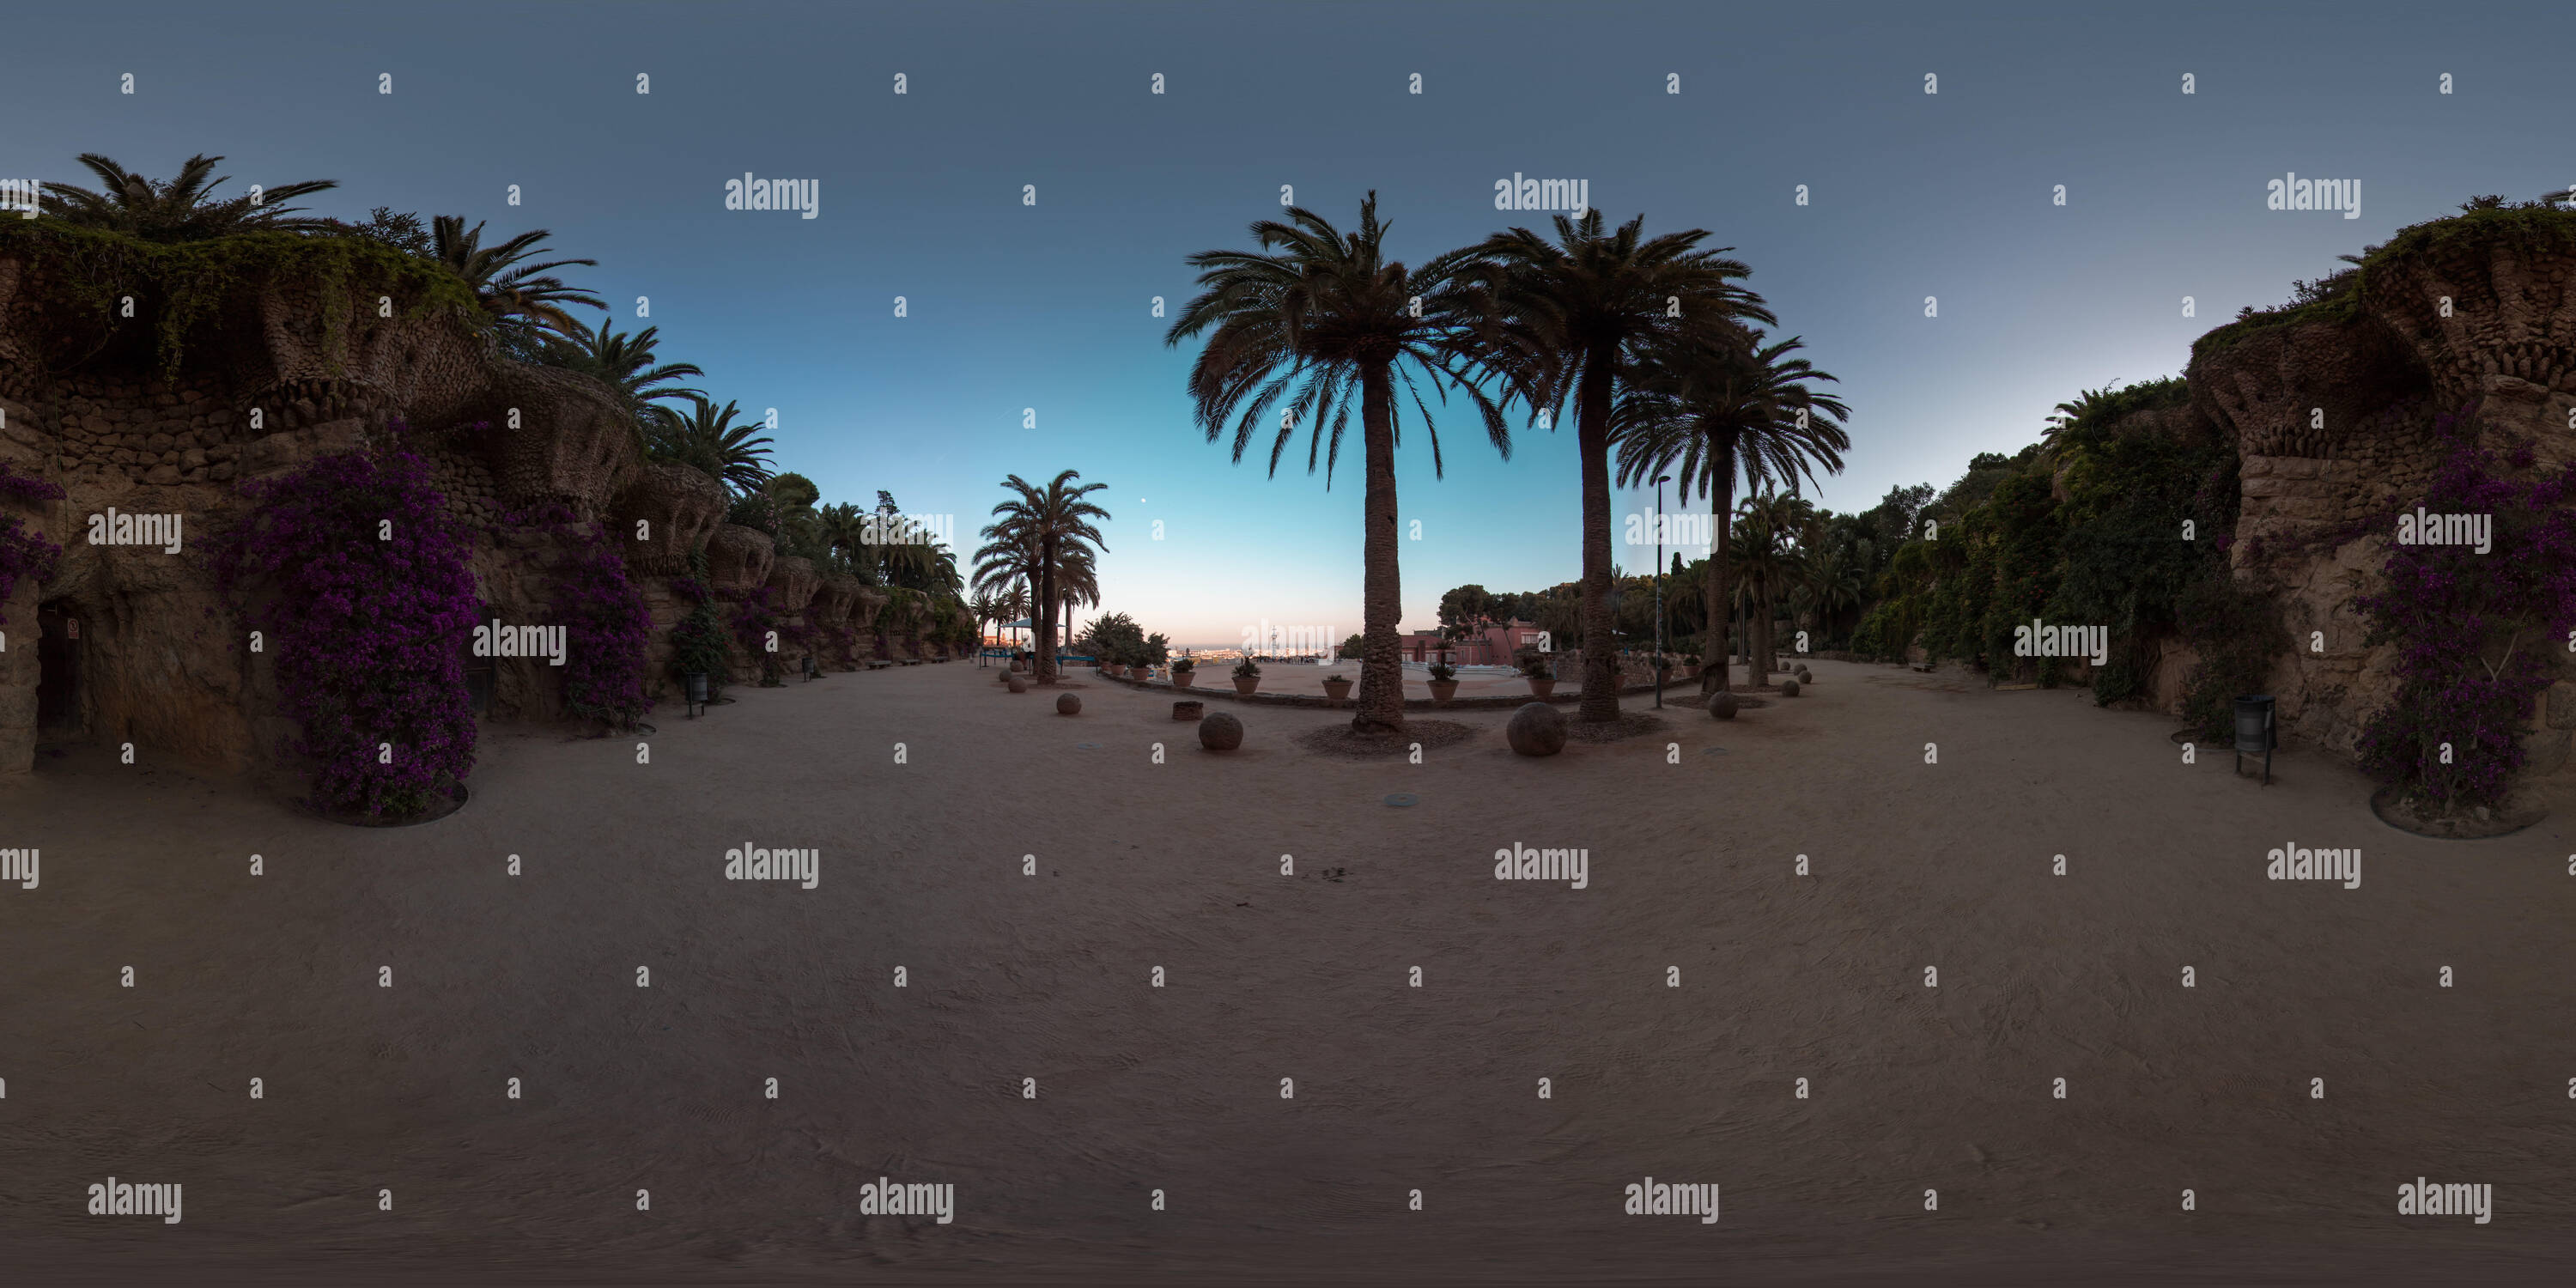 Vue panoramique à 360° de Avec l'image 3D avec panorama sphérique 360 degré de l'angle d'affichage. Prêt pour la réalité virtuelle en vr. Projection équirectangulaire complet. Magnifique cadre